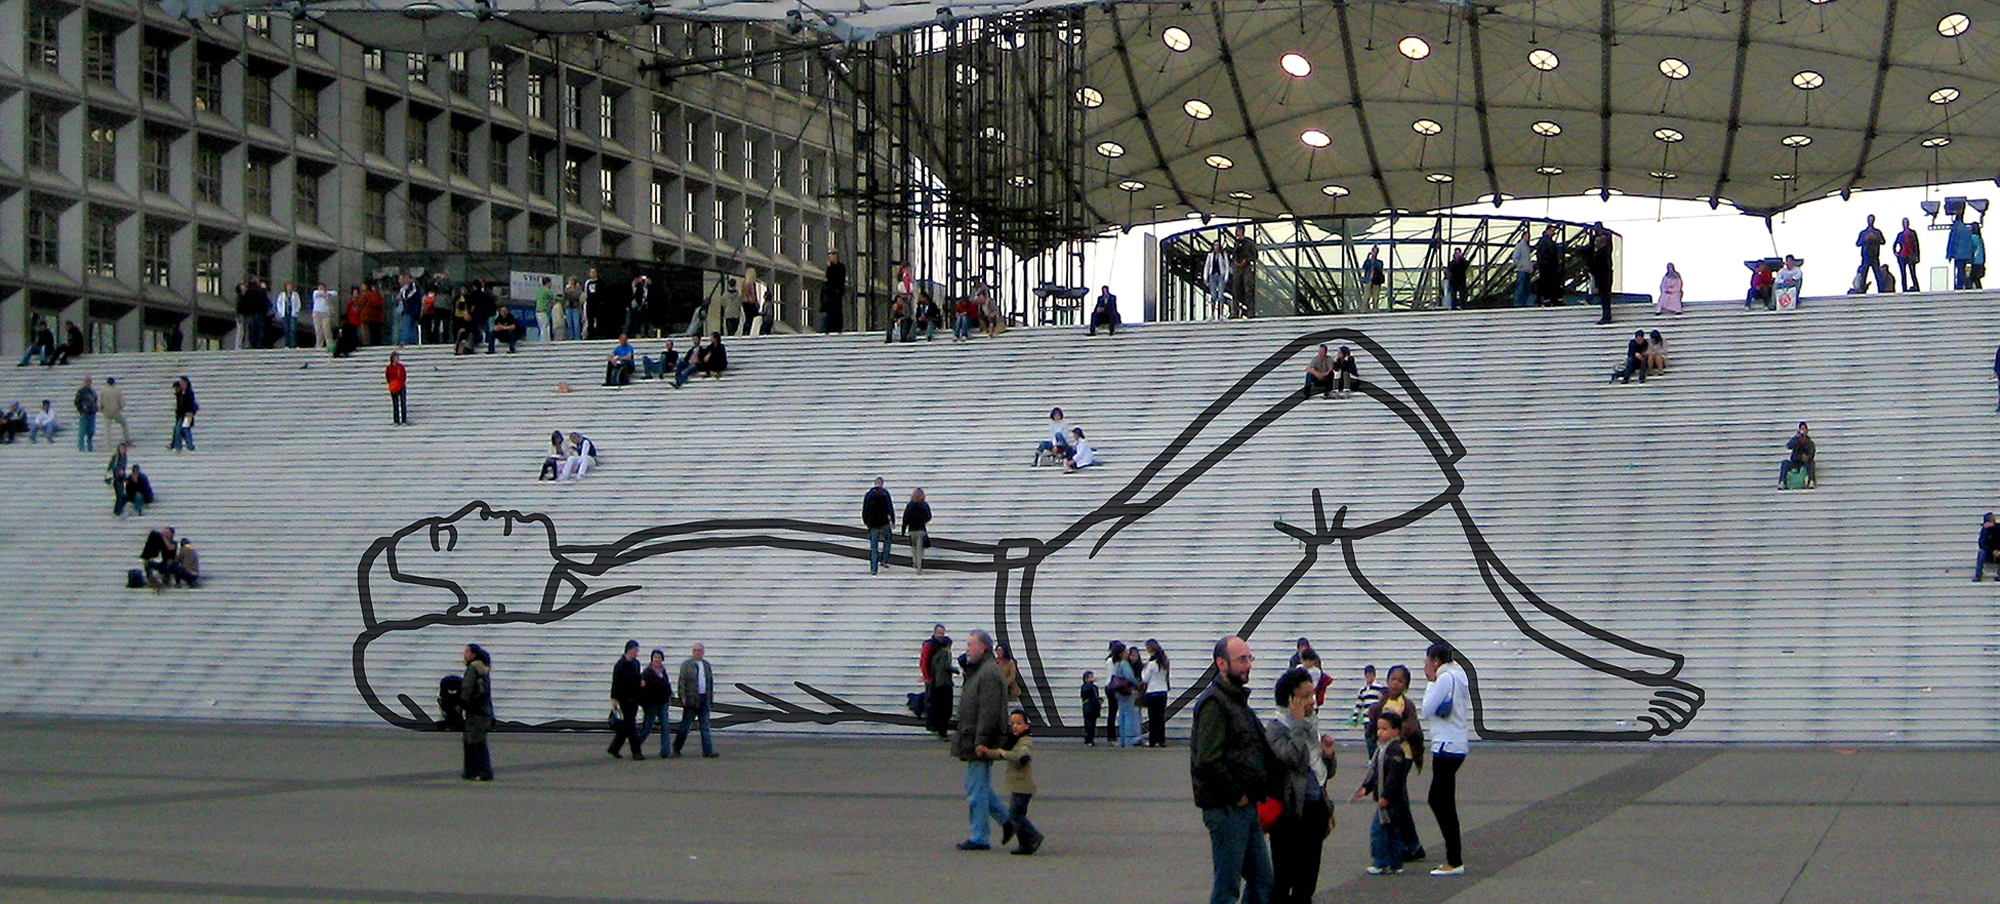 Public art Paris BlokLugthart